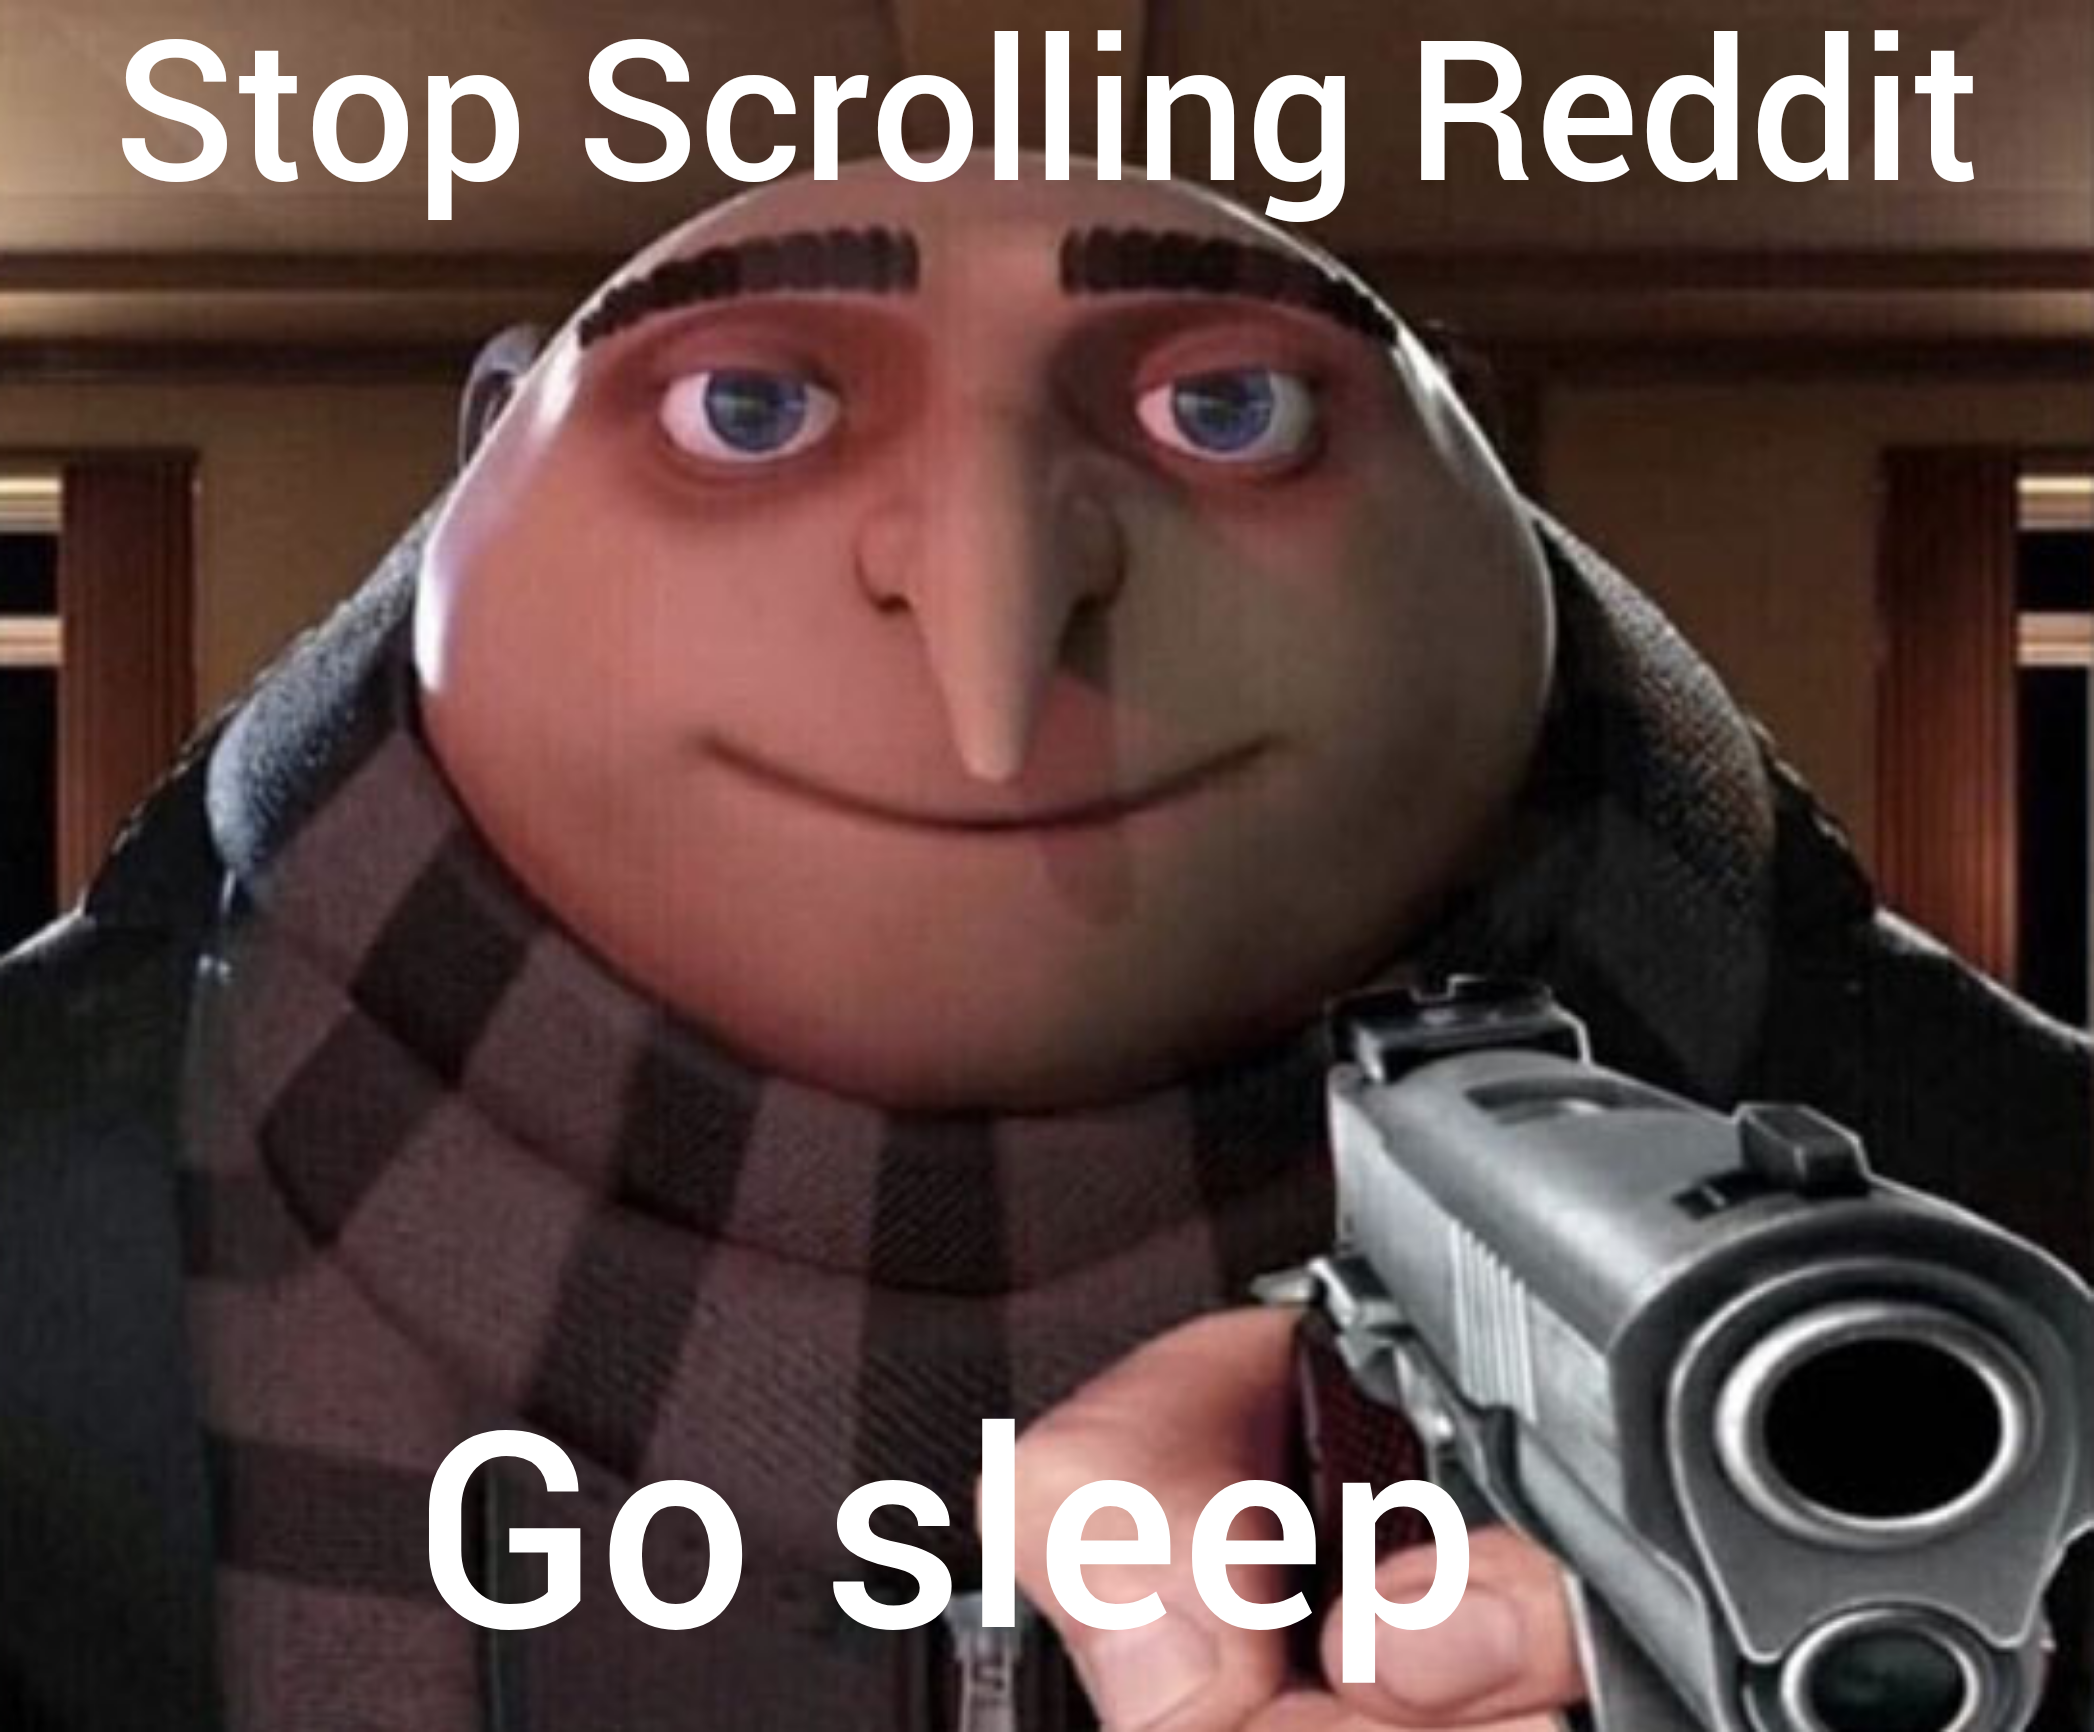 Go sleep